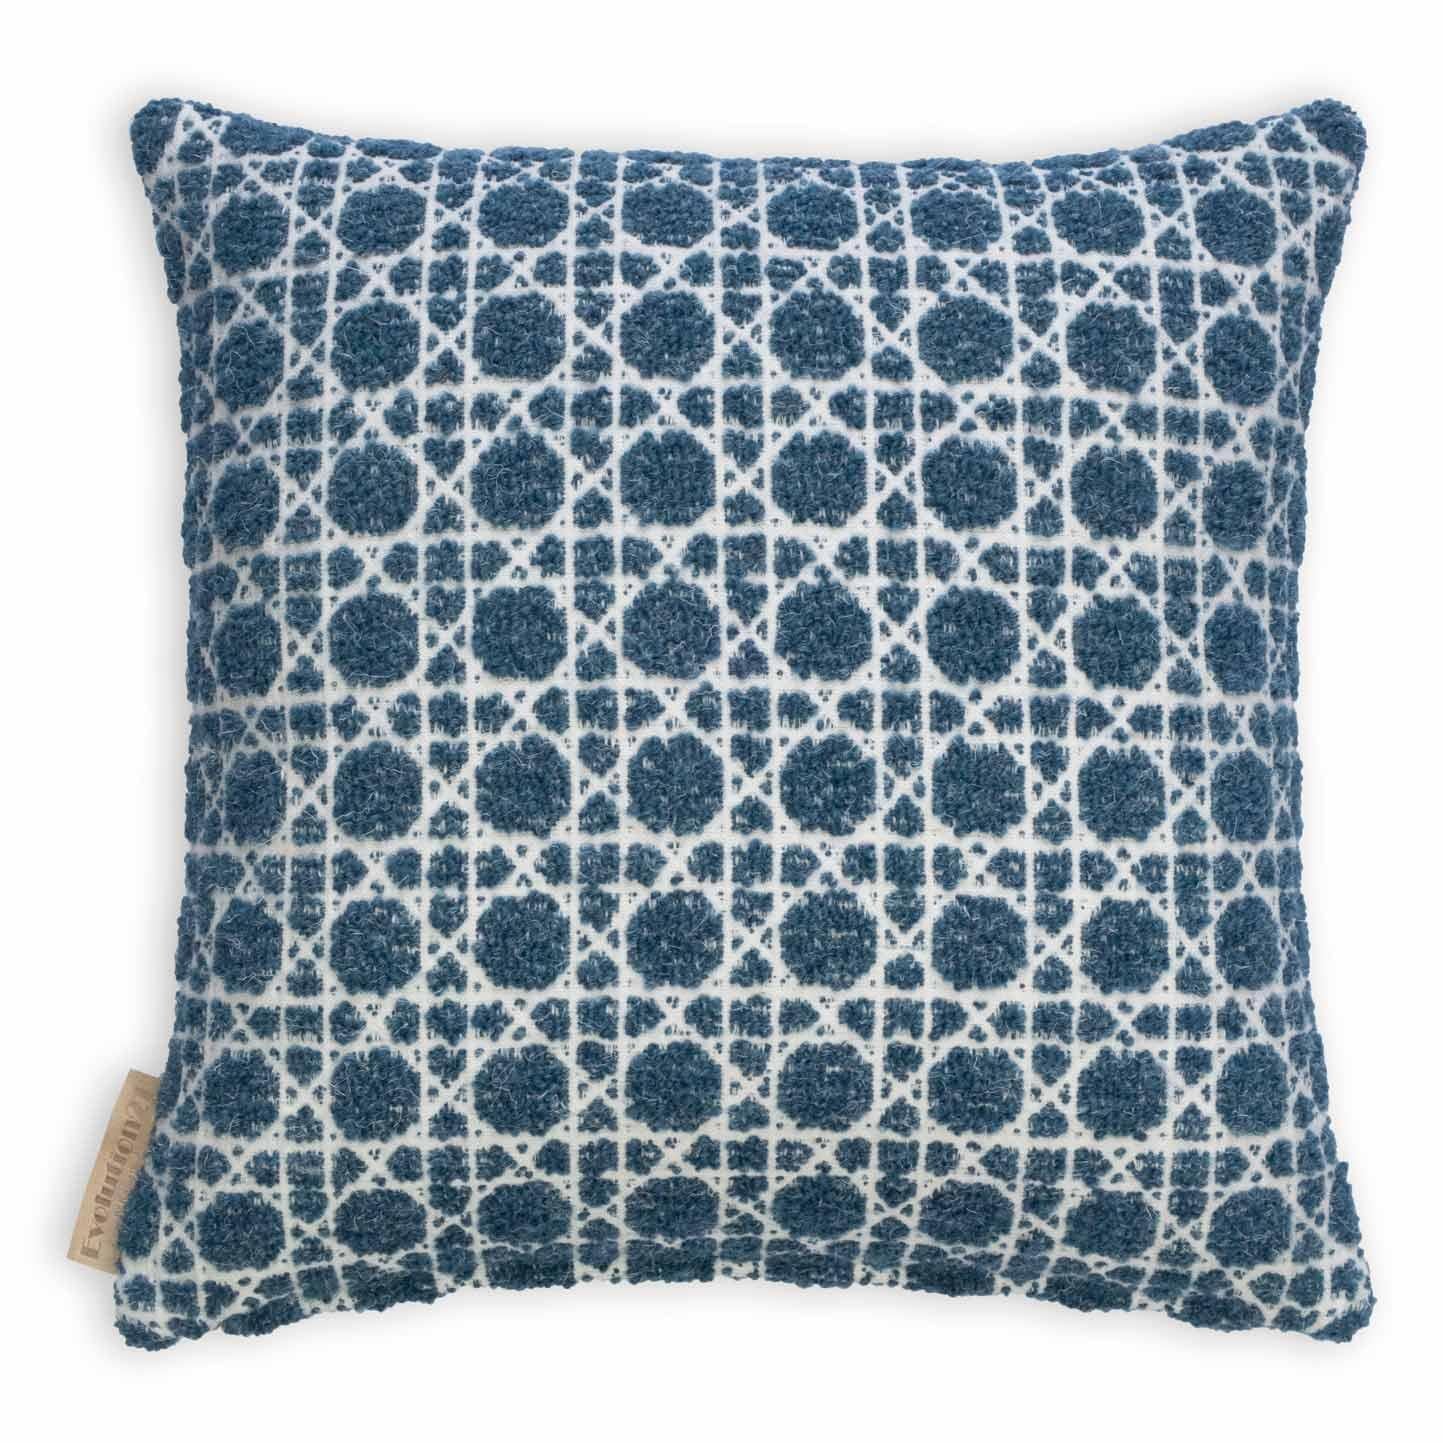 Belgian Modern Textured Patterned Throw Pillow Blue 